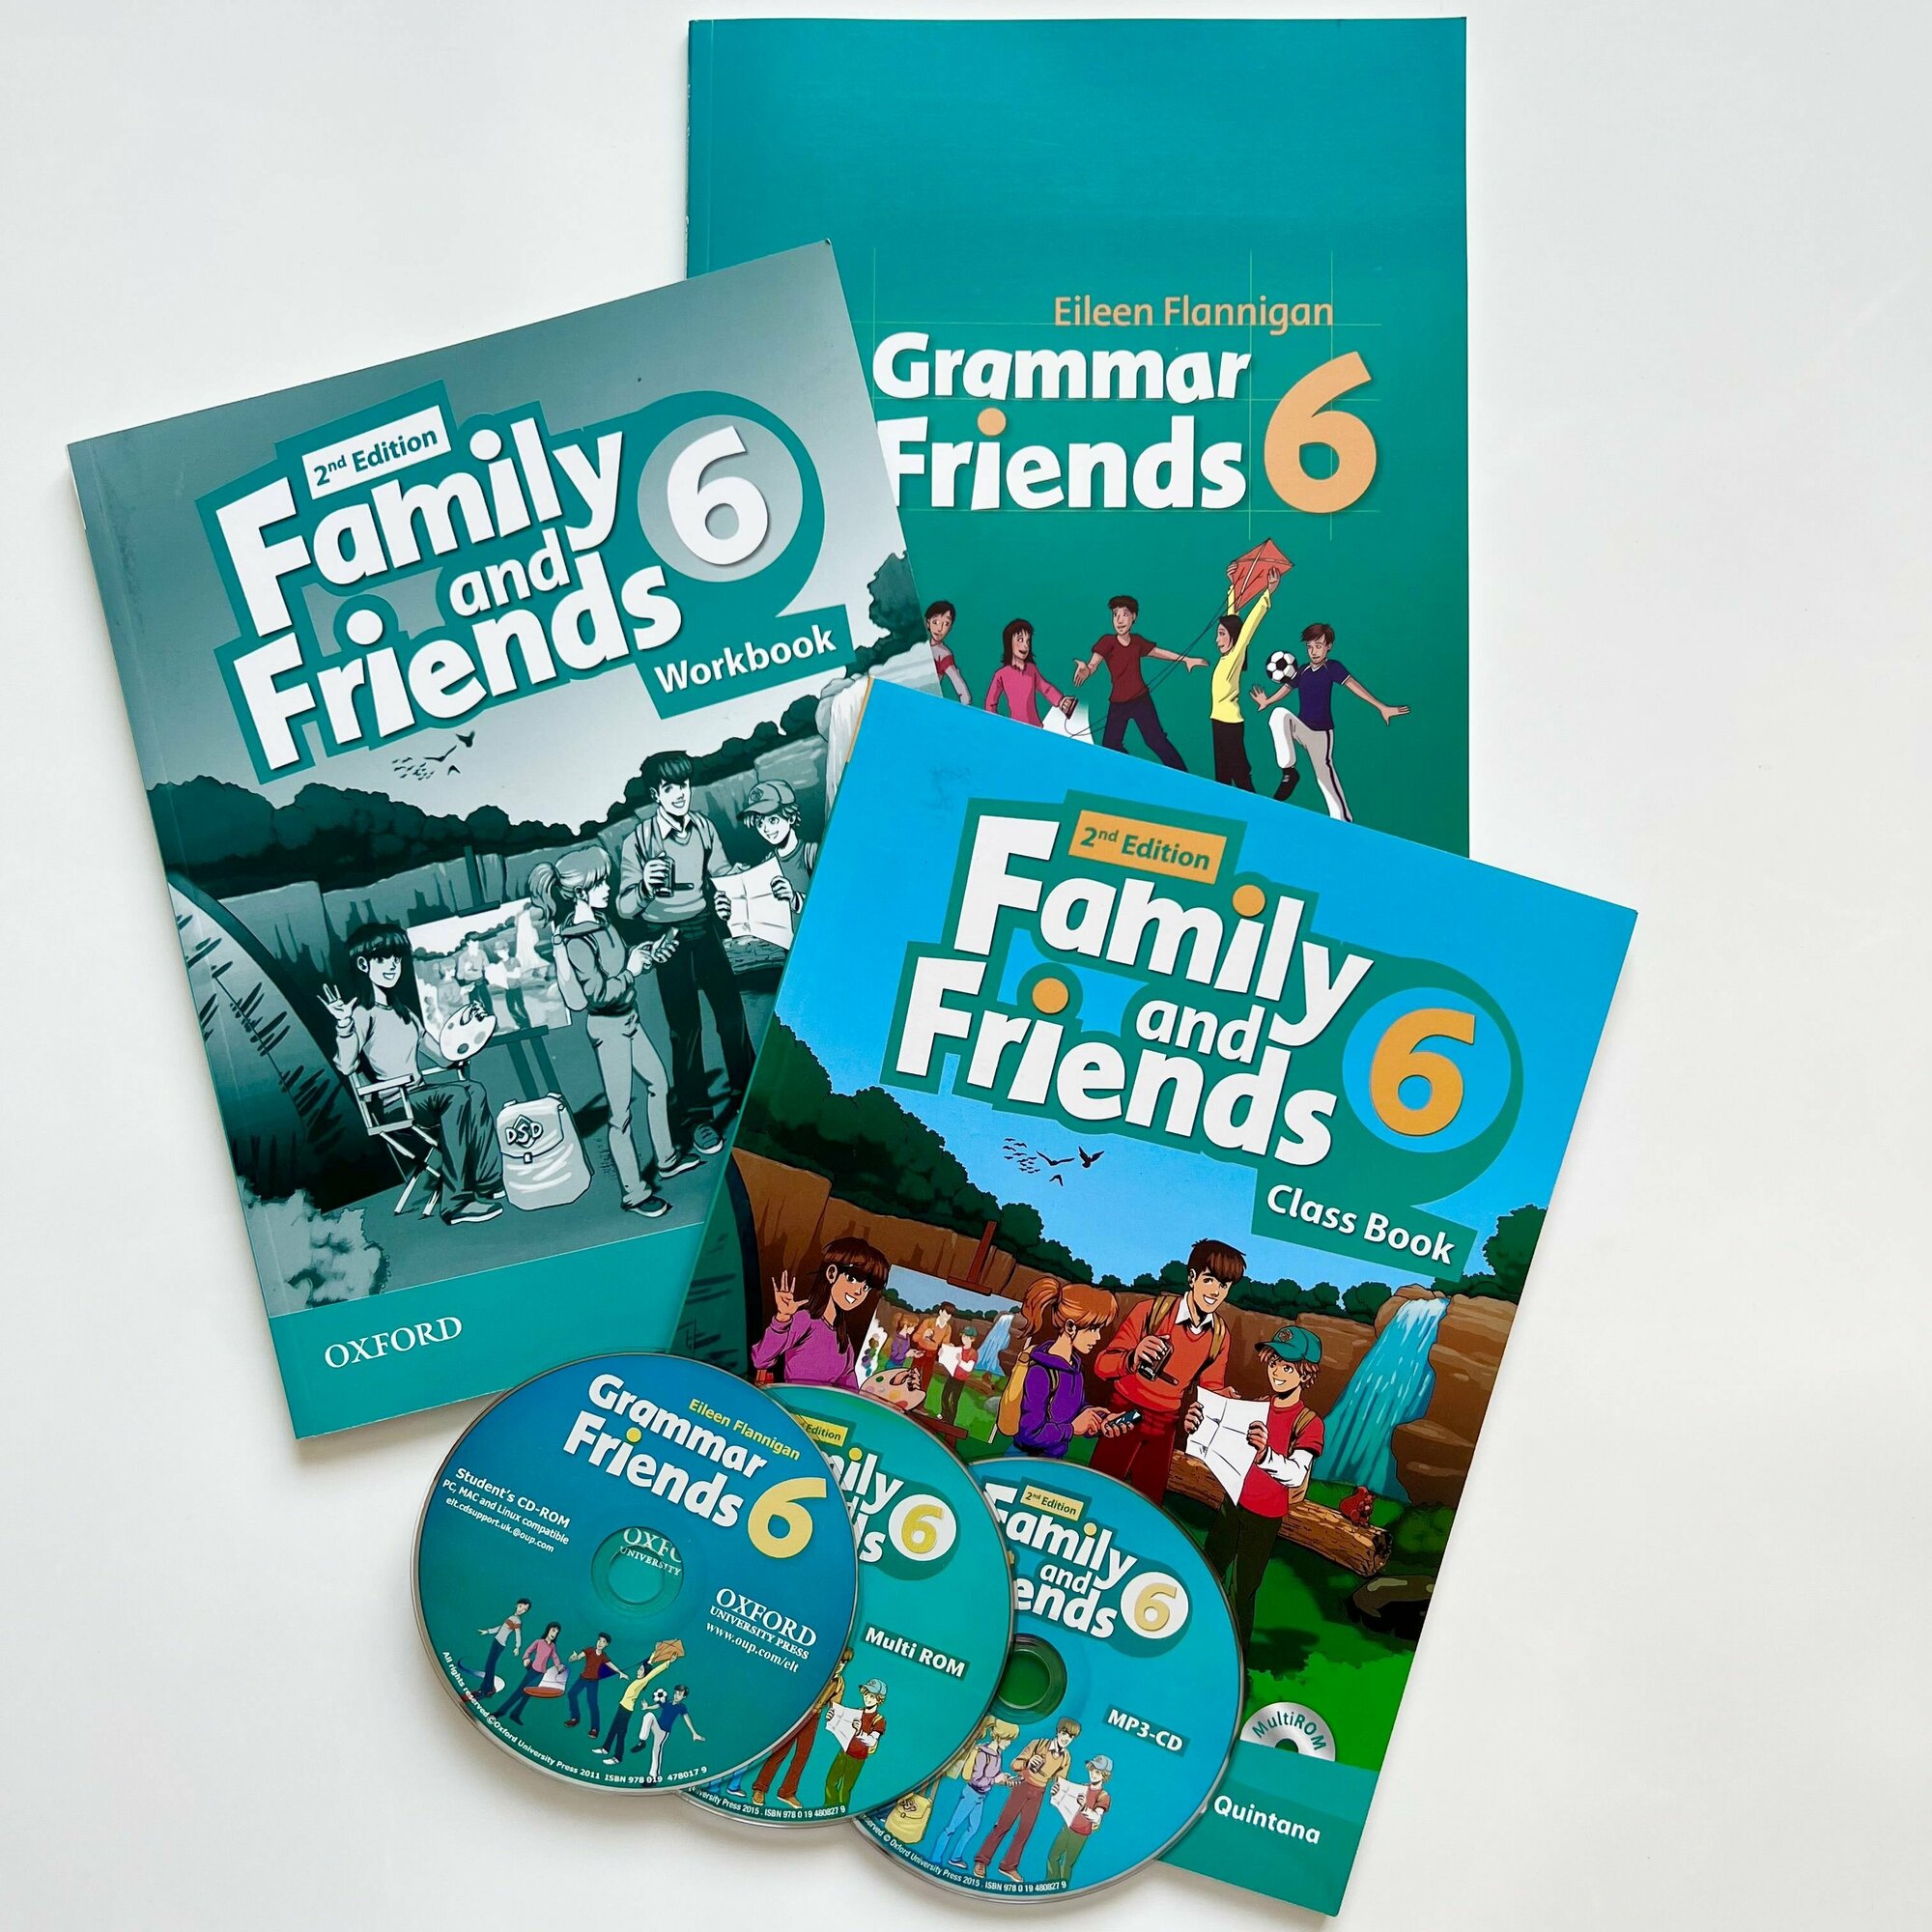 Family and Friends 6 (2nd edition) Class Book + Workbook + Grammar friends 6 + CD